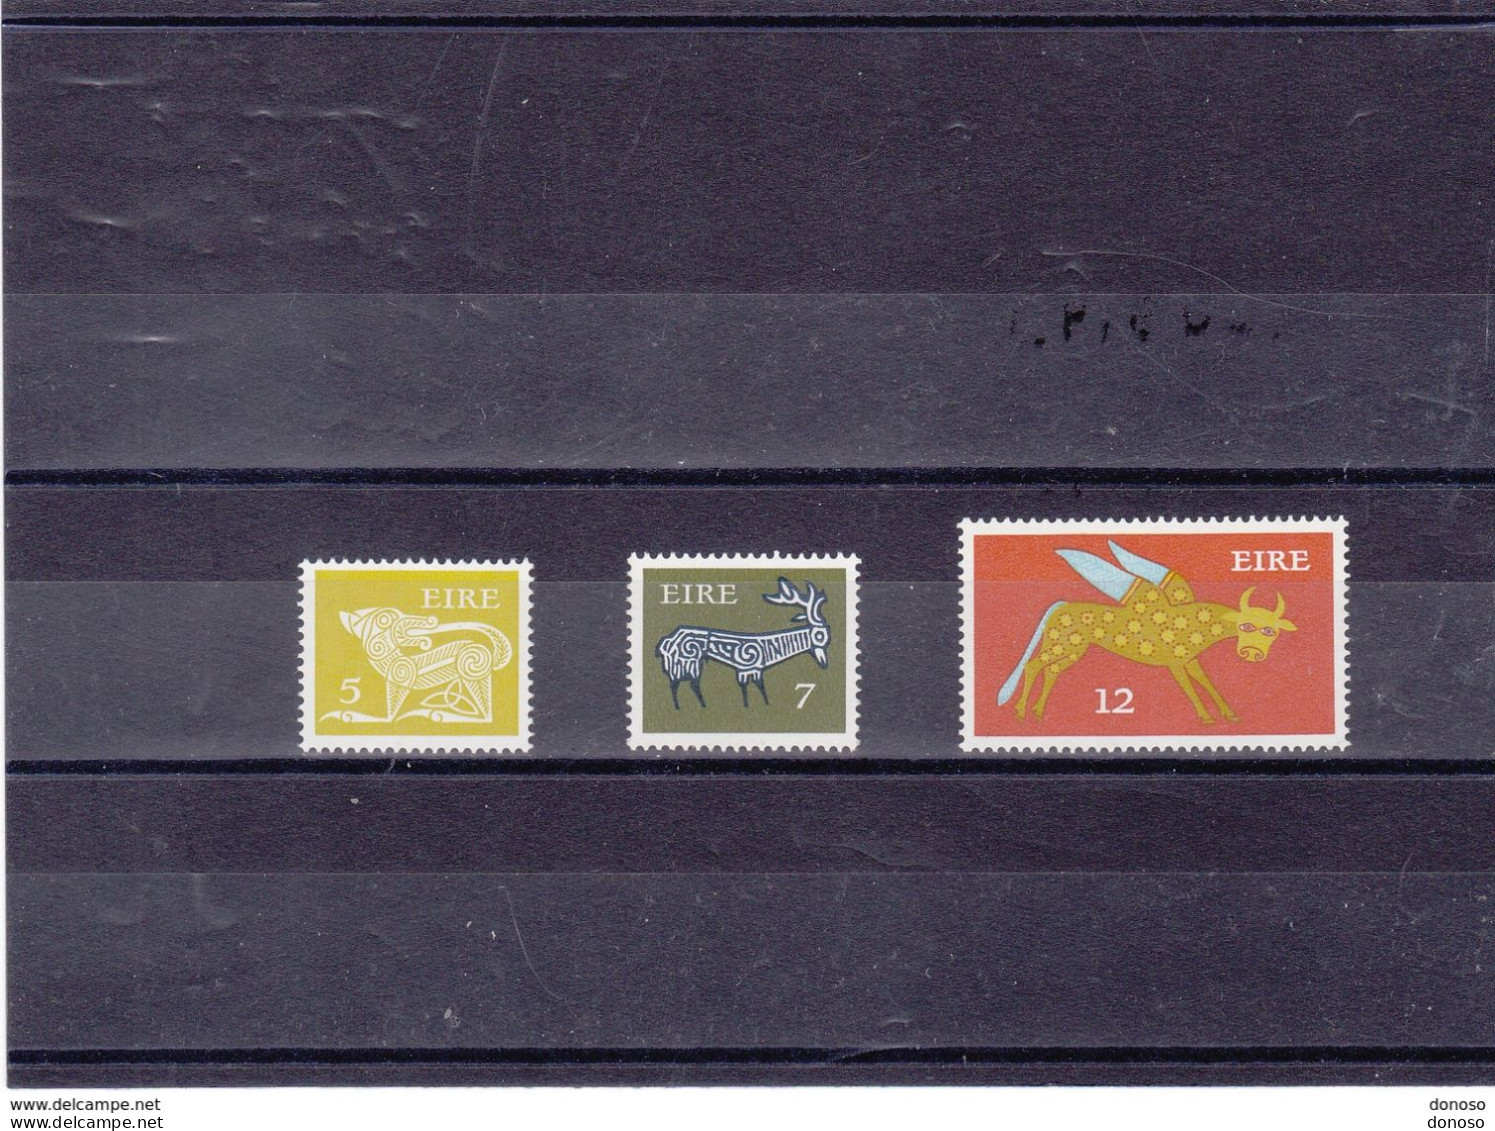 IRLANDE 1974 Série Courante  Yvert 300-302, Michel 298-300 NEUF** MNH Cote Yv 15 Euros - Ungebraucht